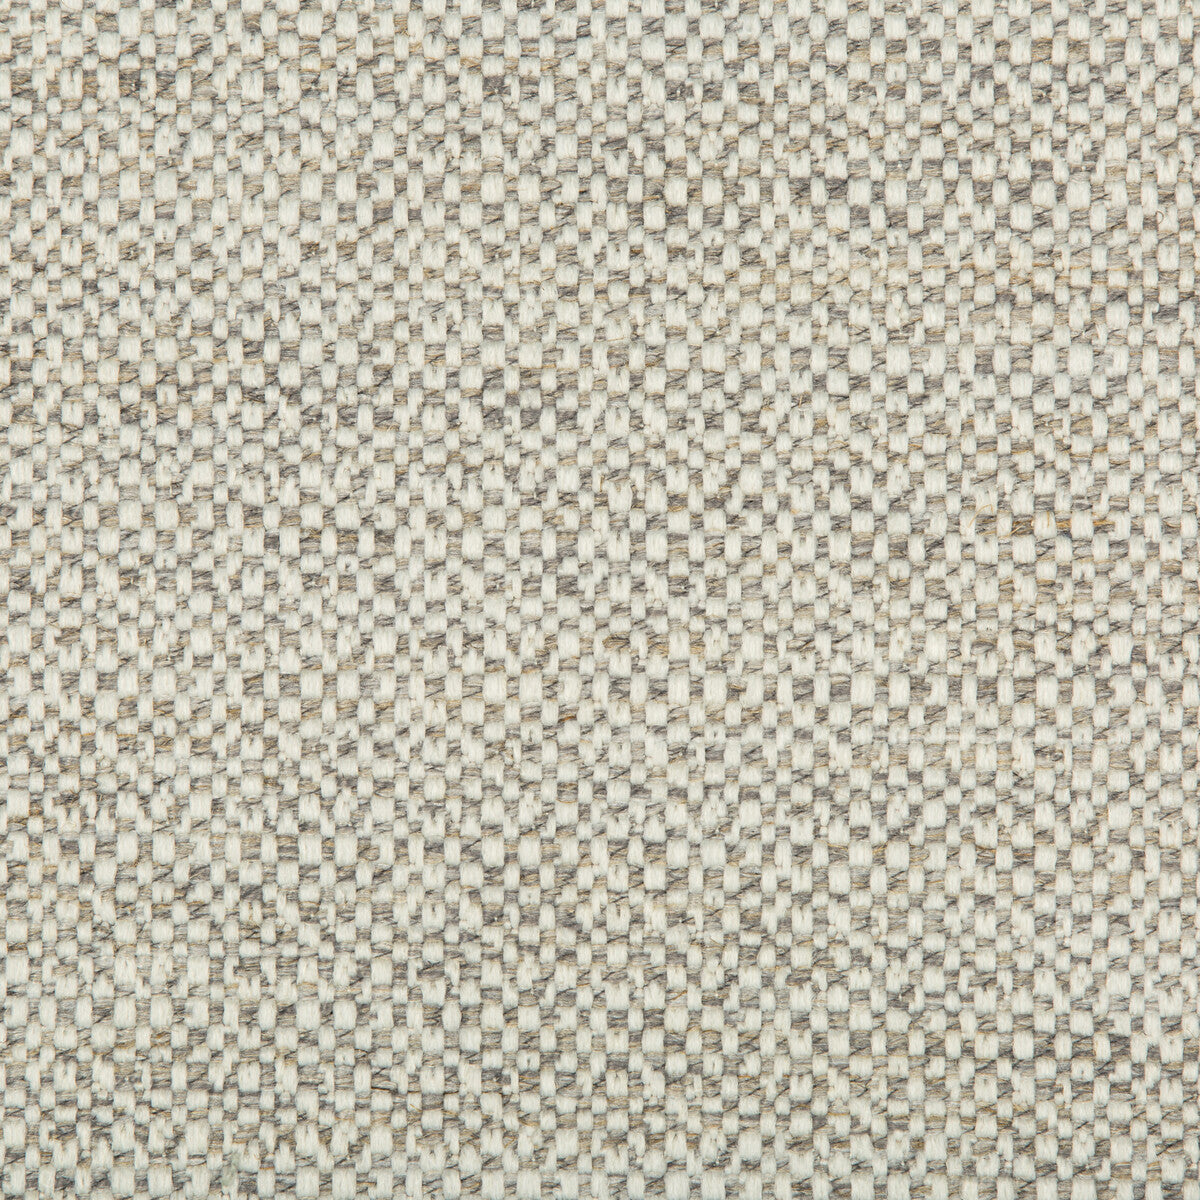 Kravet Design fabric in 35676-11 color - pattern 35676.11.0 - by Kravet Design